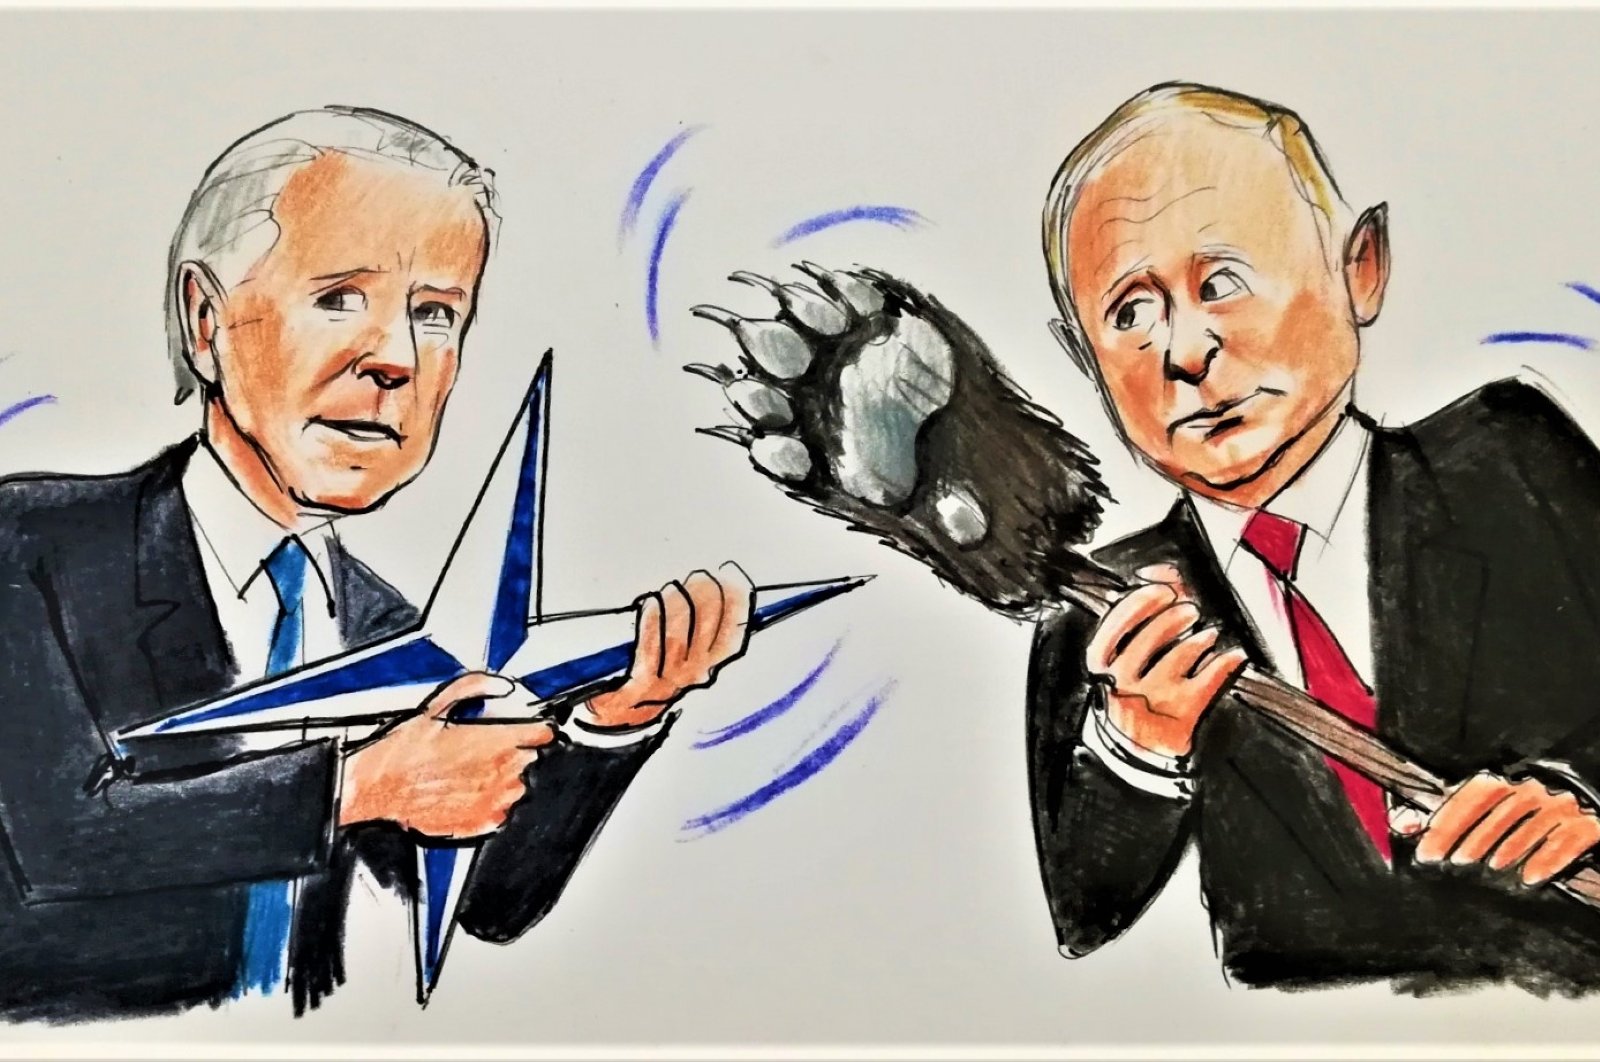 Donbass: The first round between Biden and Putin | Column